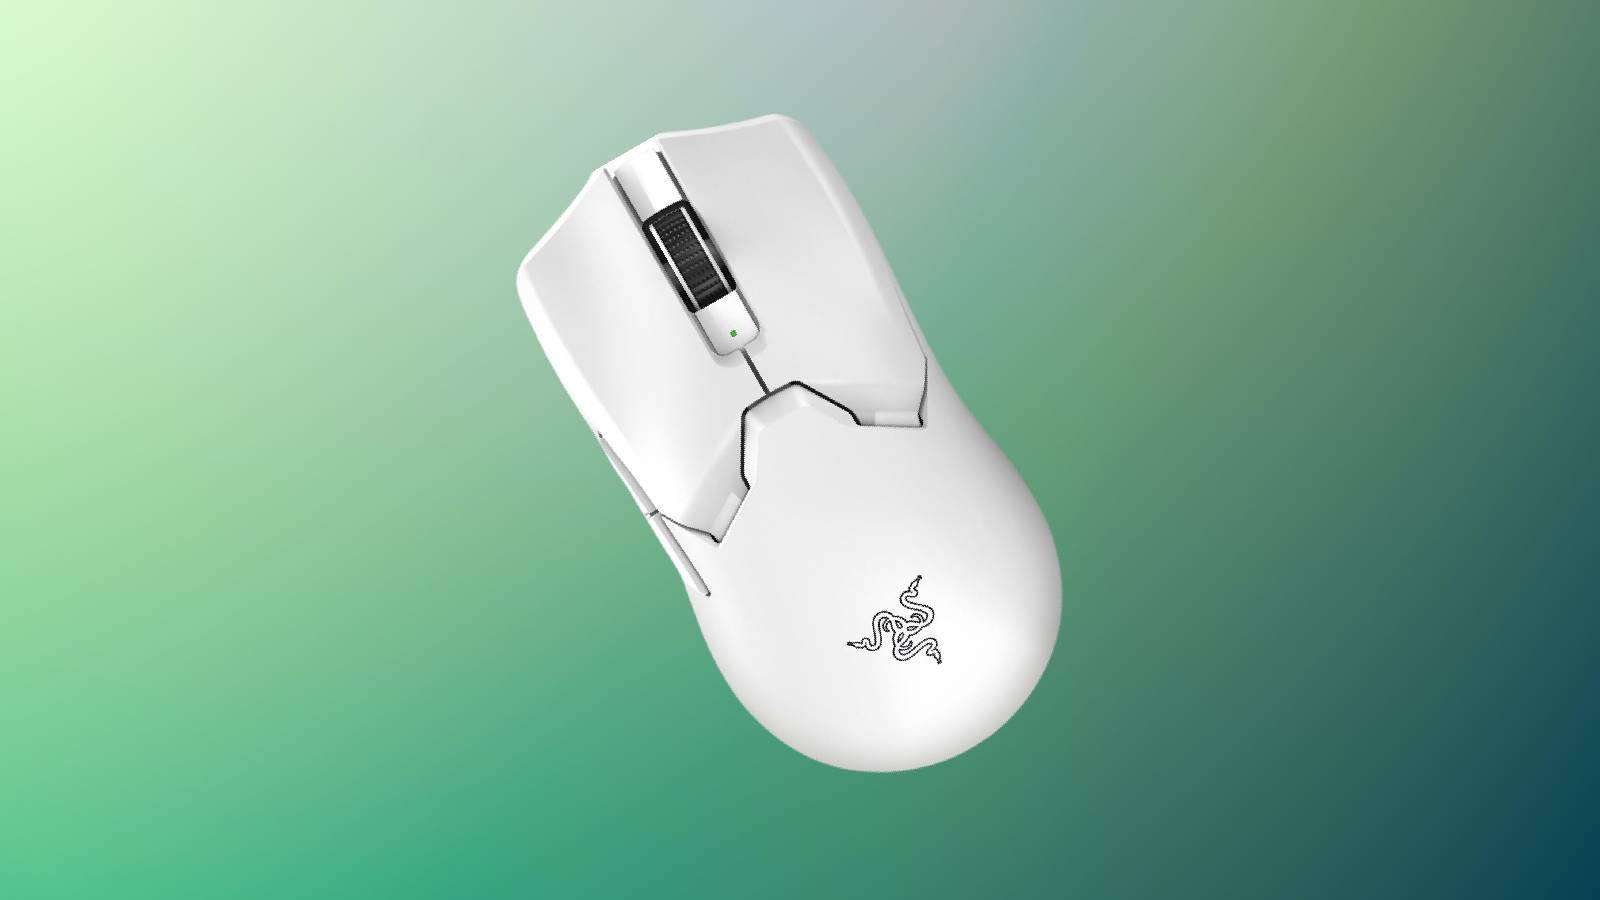 Razer Viper V2 Pro mouse